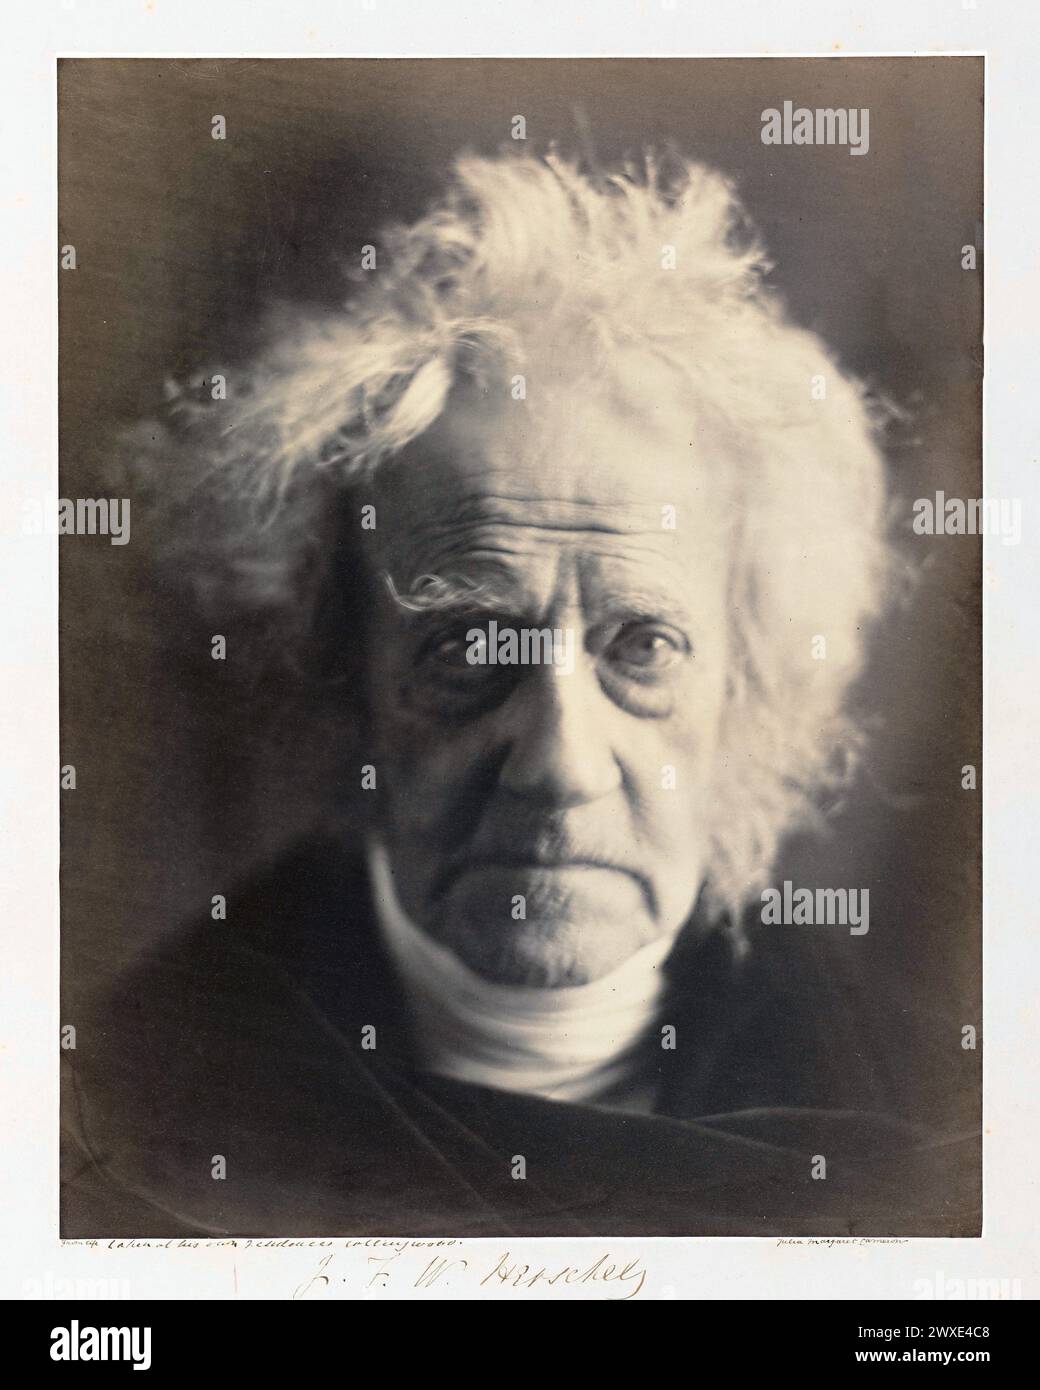 Porträt des Astronomen Sir John Herschel, fotografiert von Julia Margaret Cameron, 1867. Sir John Frederick William Herschel, 1. Baronet KH FRS, war ein englischer Polymath, der als Mathematiker, Astronom, Chemiker, Erfinder und experimenteller Fotograf tätig war, der den Entwurf erfand und botanische Arbeiten verrichtete. Herschel begründete die Verwendung des Julianischen Tagessystems in der Astronomie Stockfoto